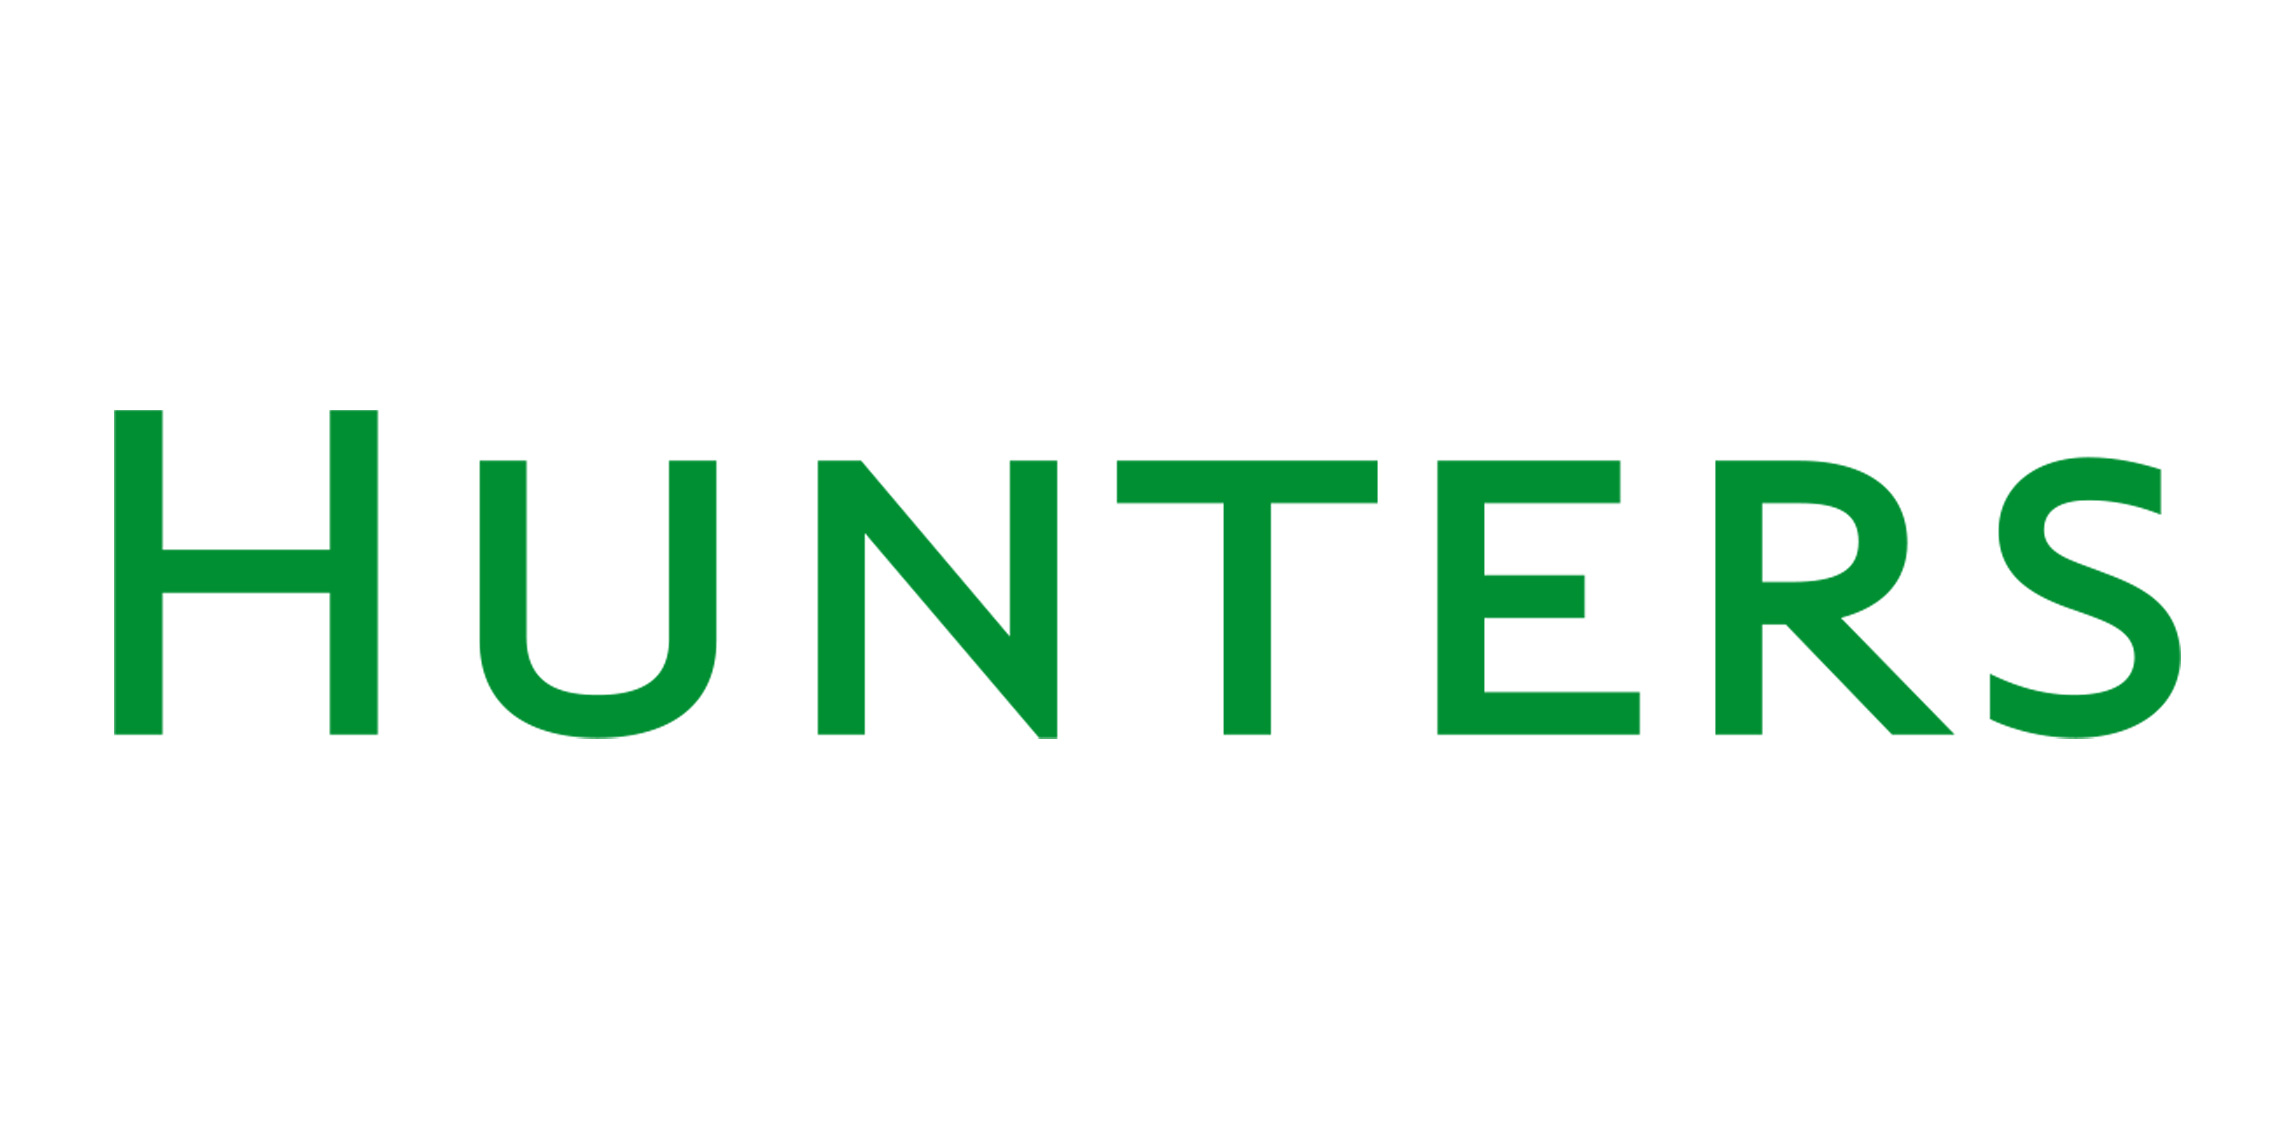 Hunters law logo in green